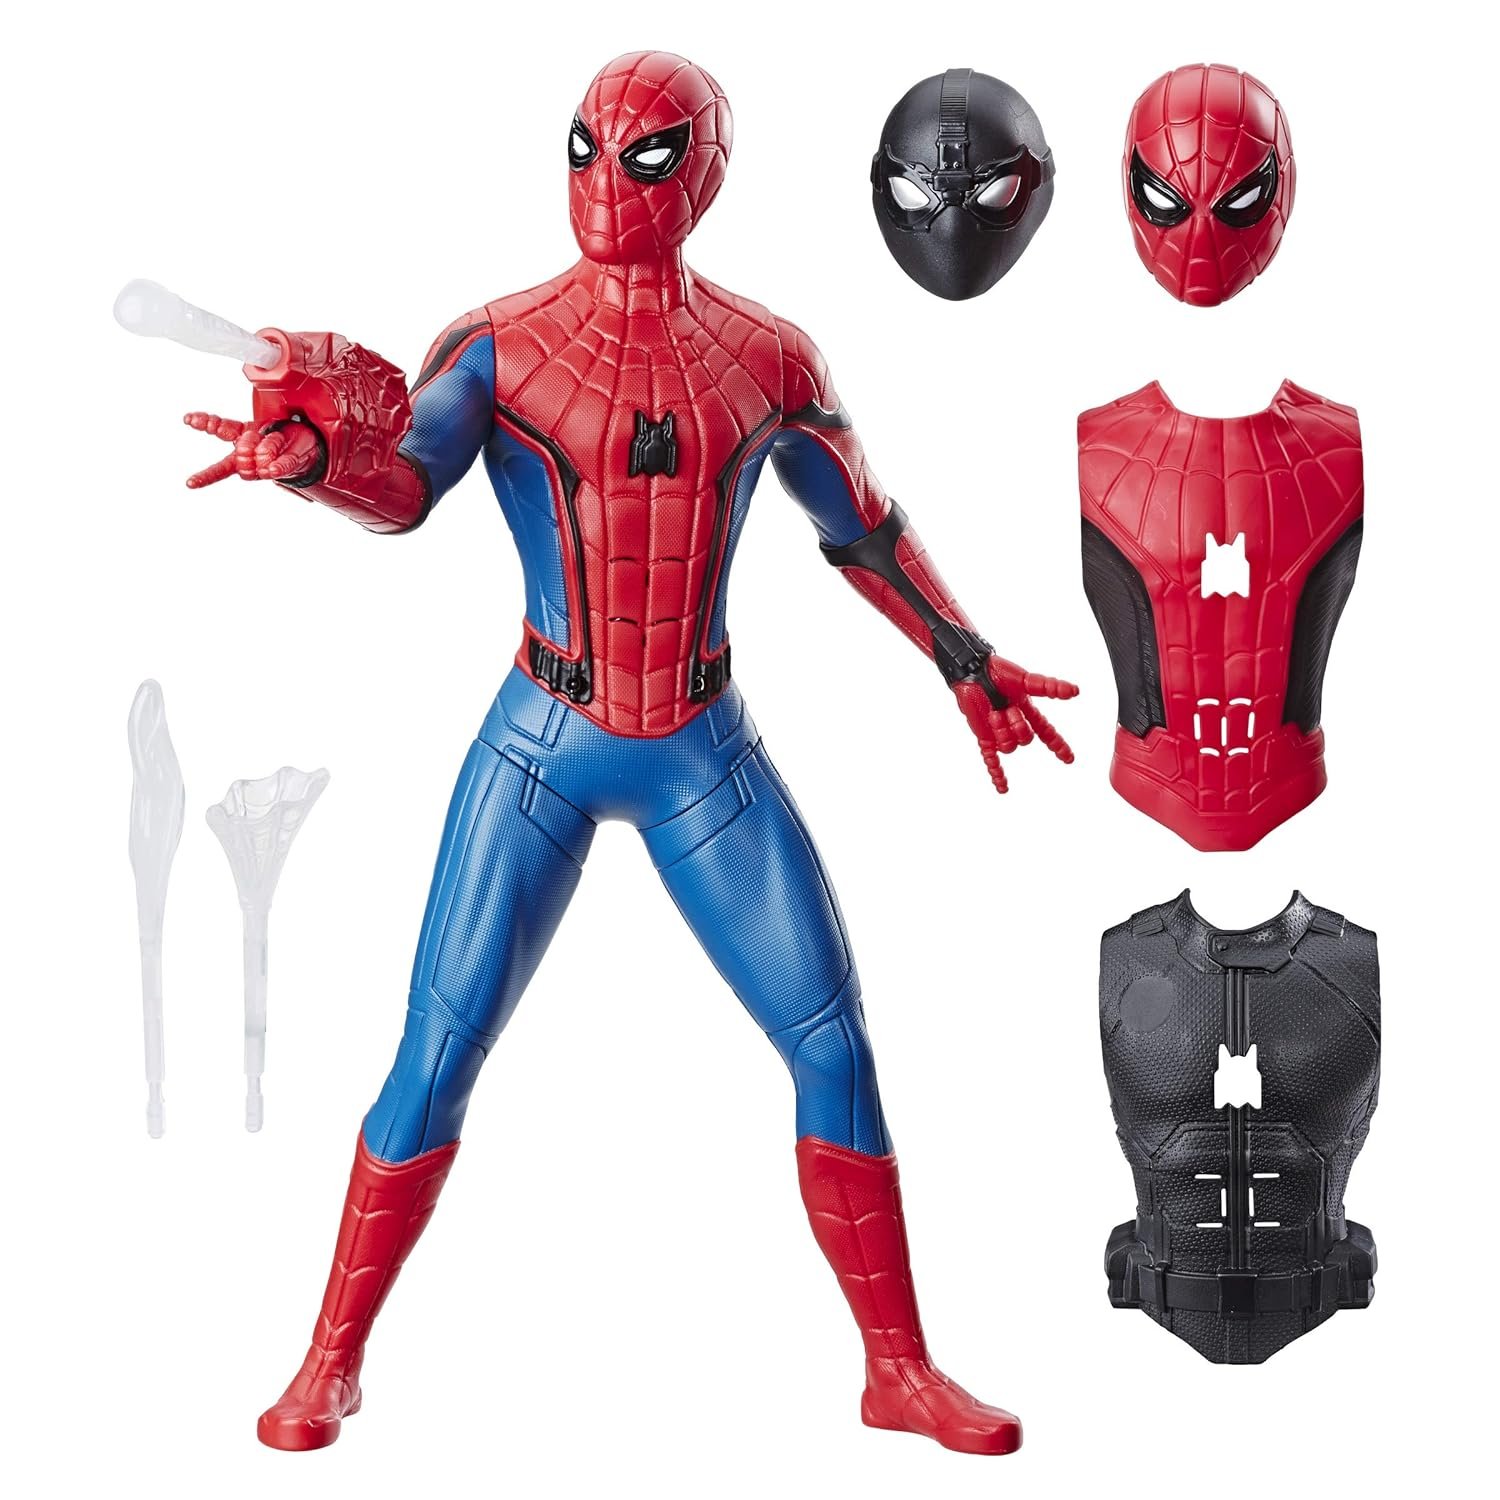 13-inch Spider-Man action figure